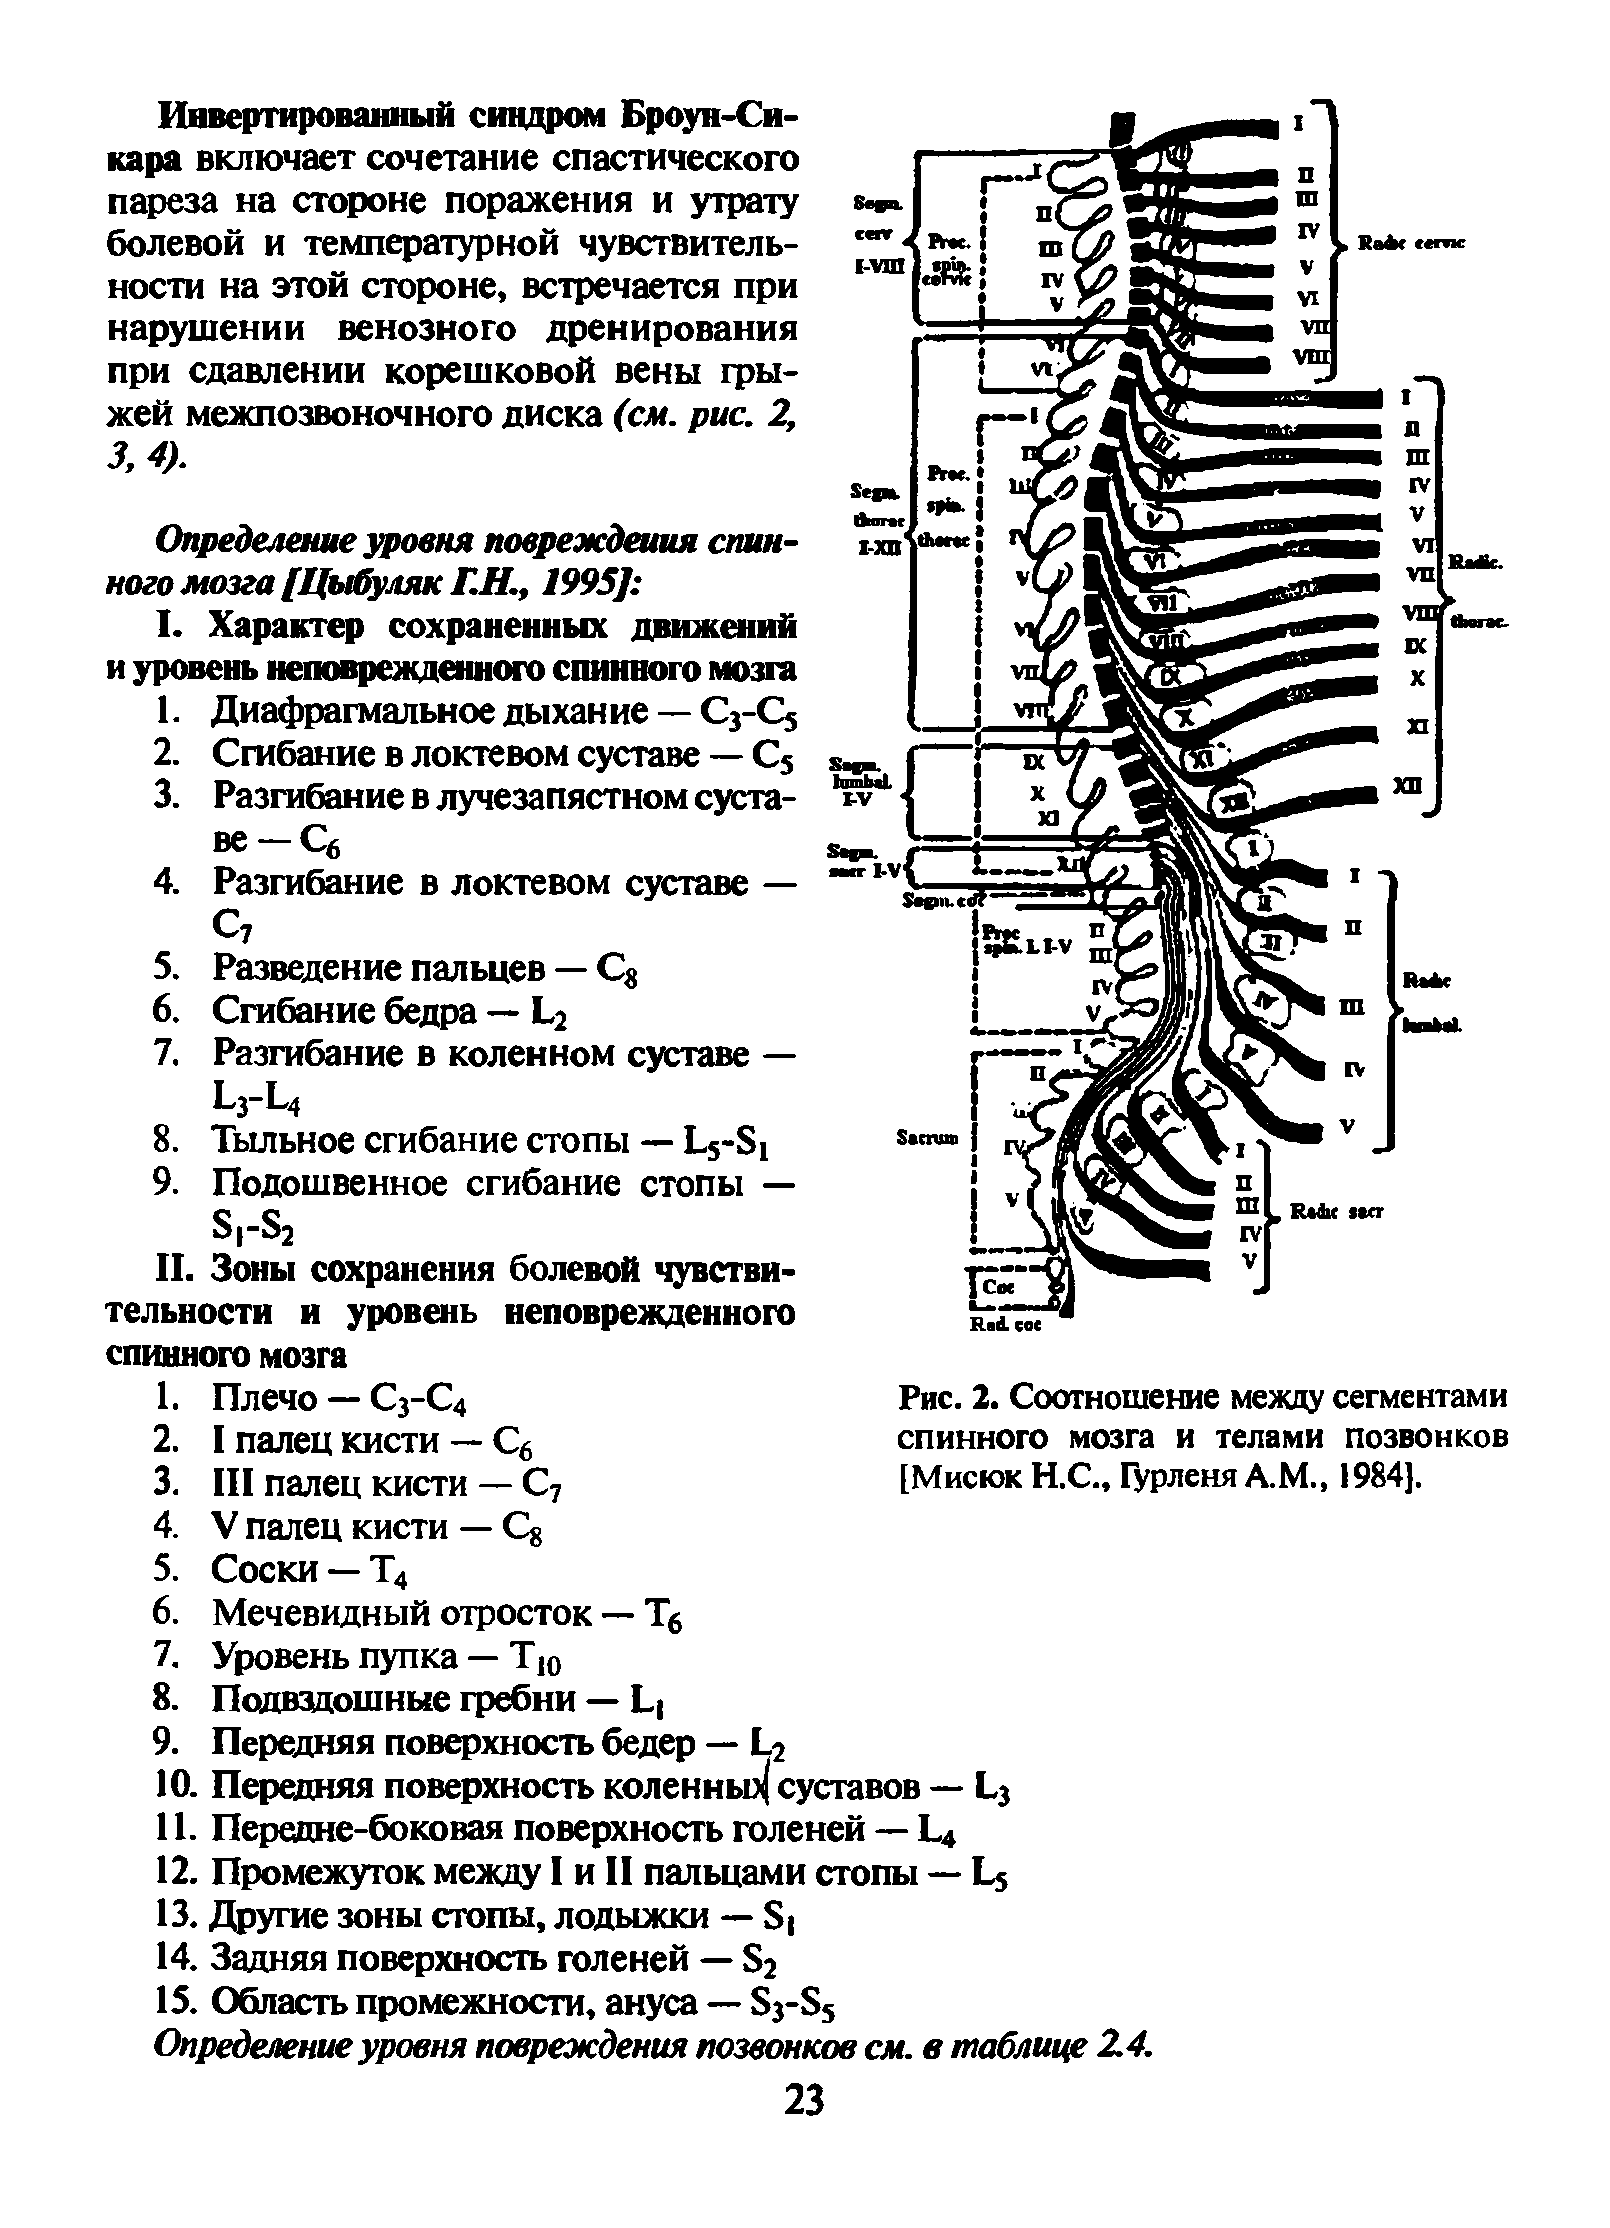 Рис. 2. Соотношение между сегментами спинного мозга и телами позвонков [Мисюк Н.С., Гурленя А.М., 1984].